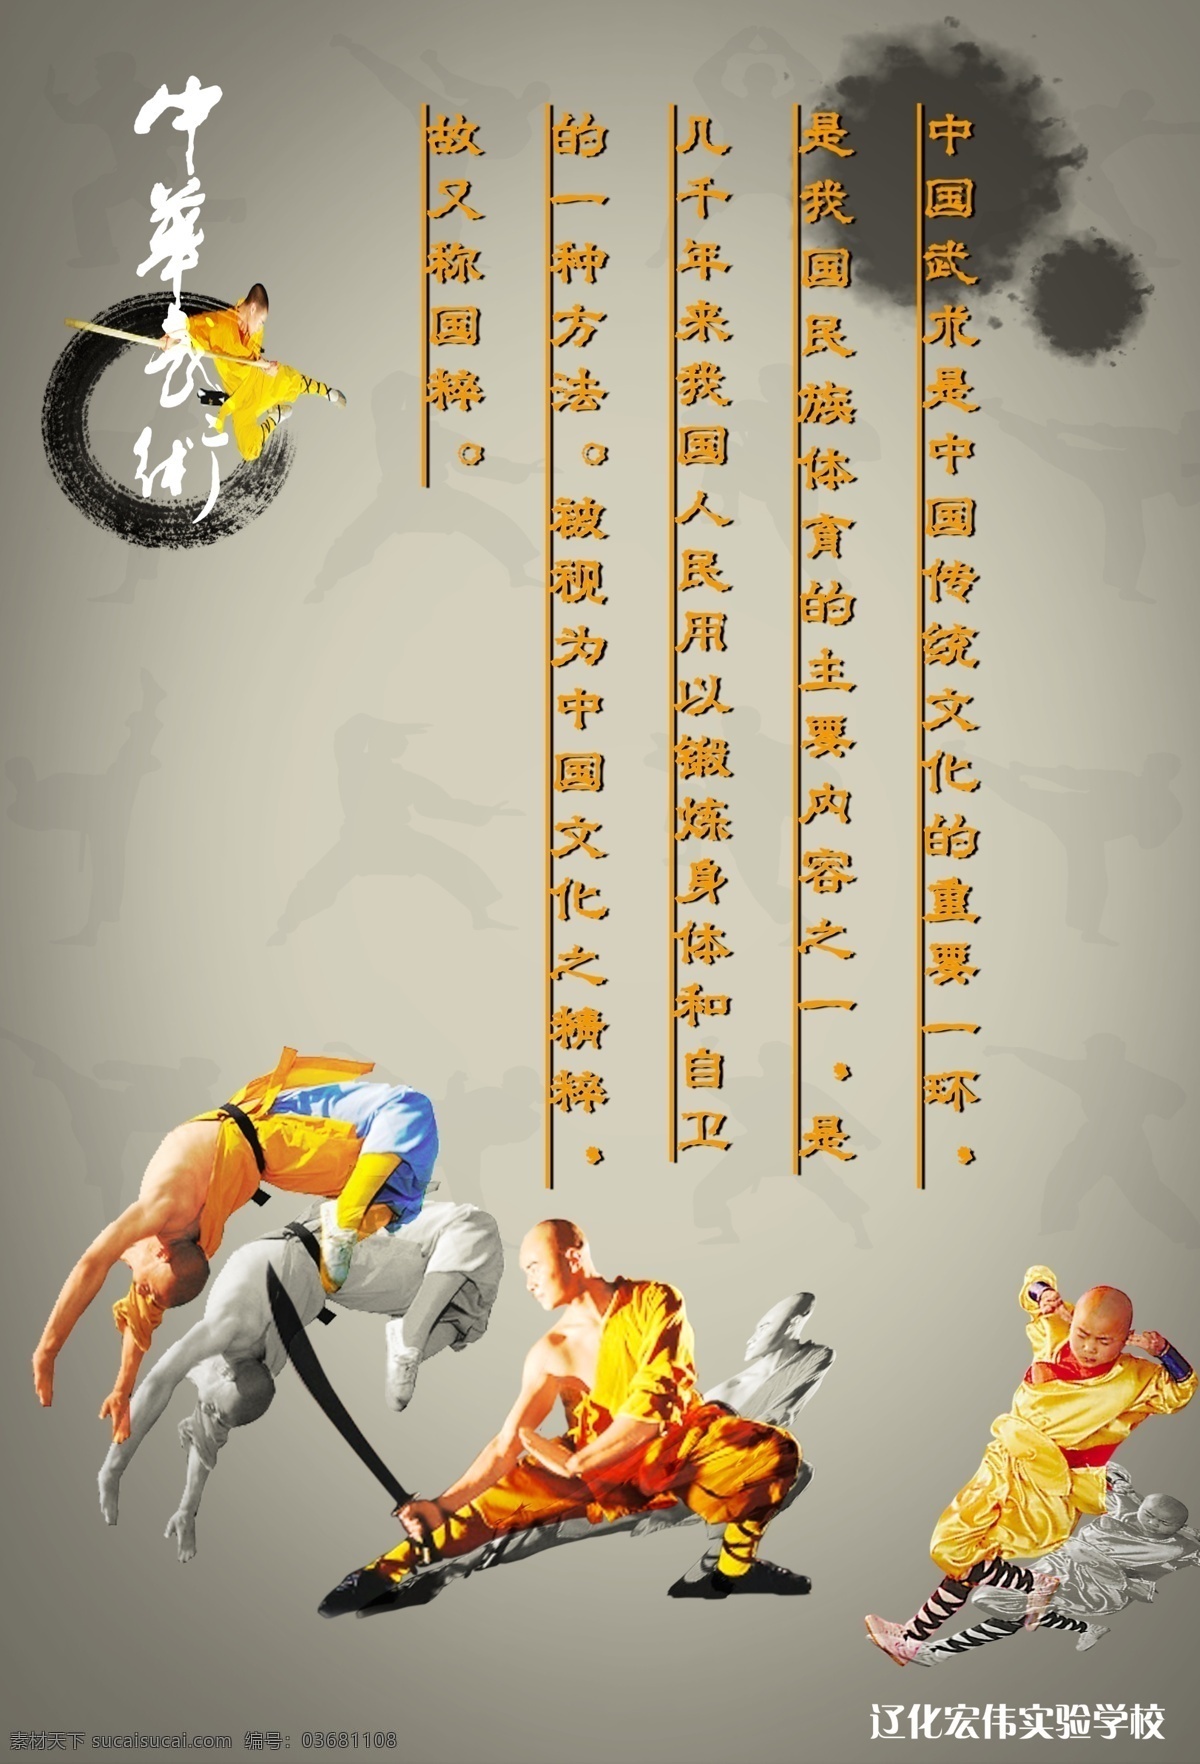 中国武术 文化 简介 武僧 古典 展板设计 展板模板 广告设计模板 源文件